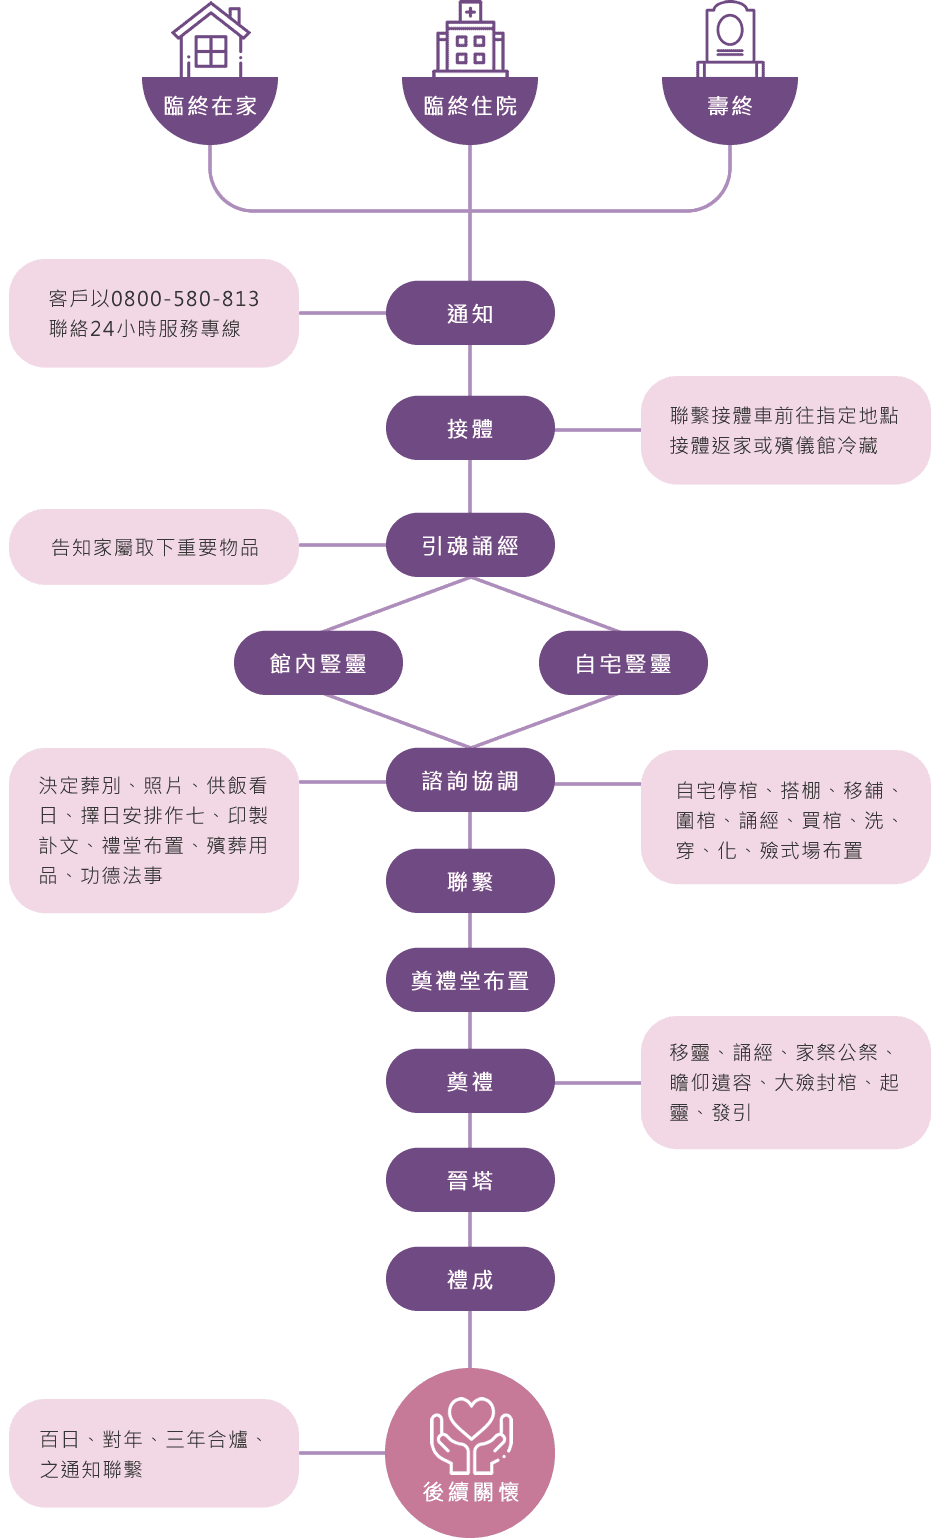 中式禮儀服務流程